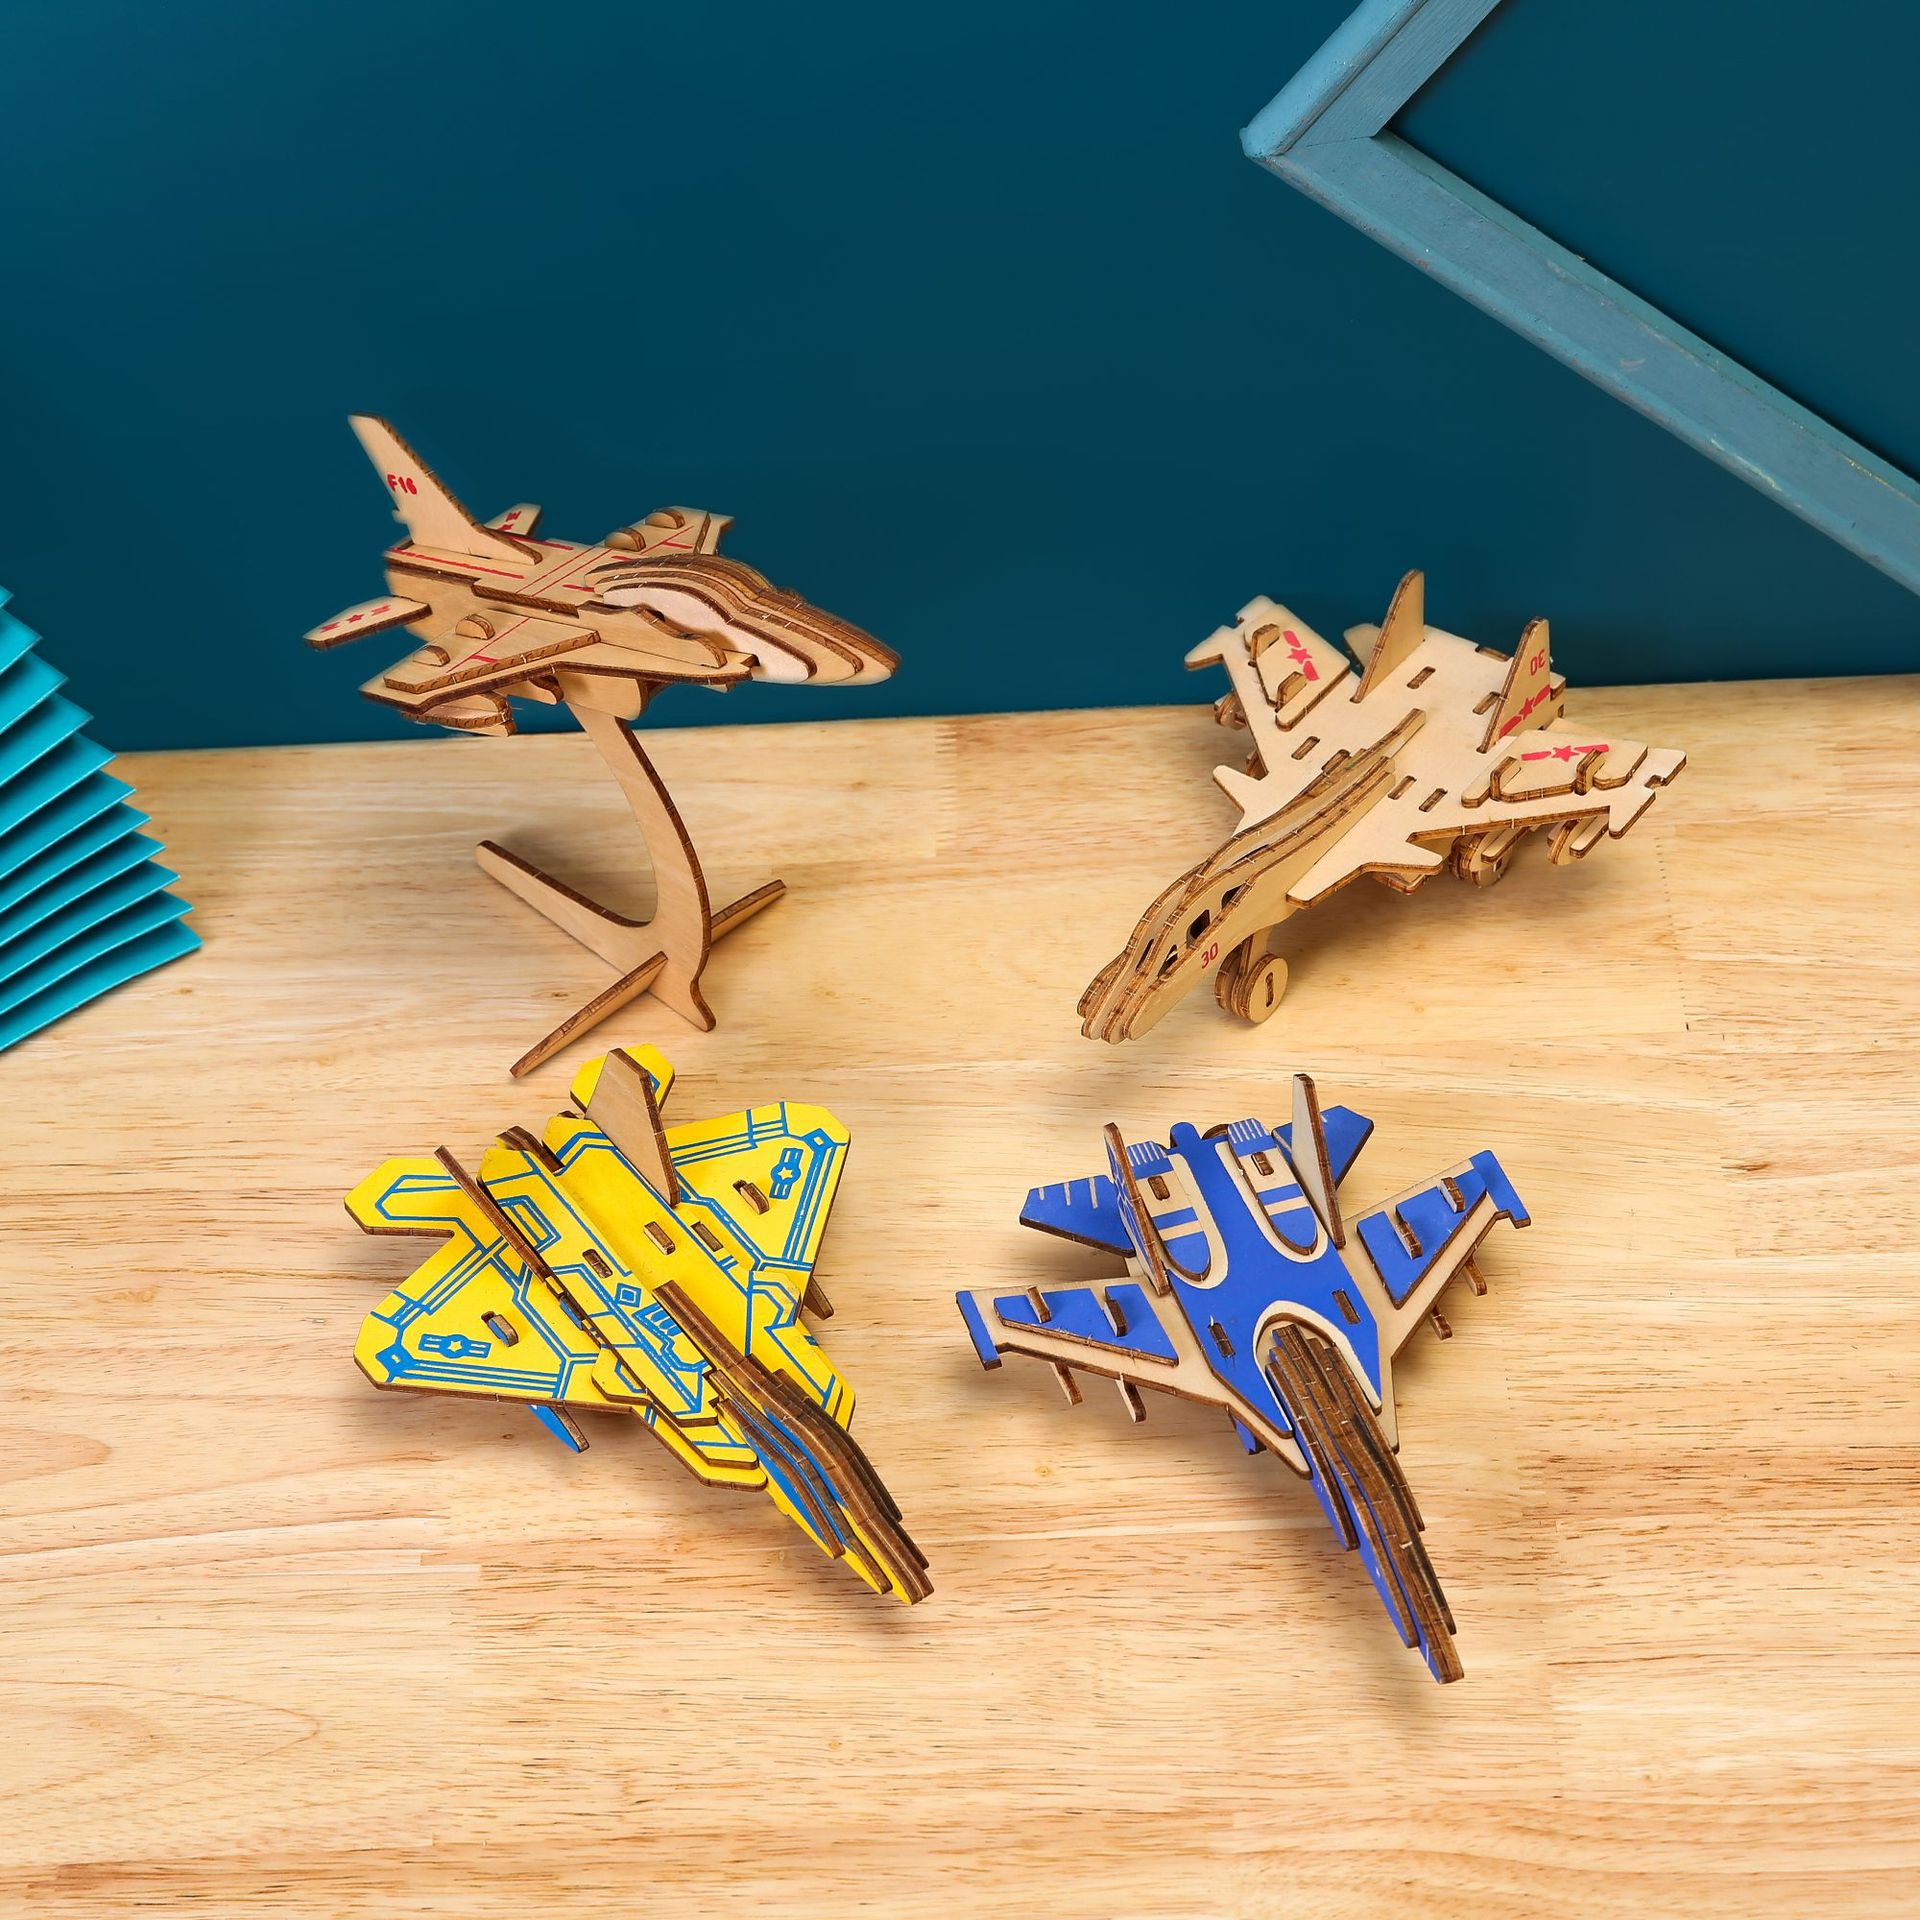 激光切割木制三合板3D拼图批发 儿童组装玩具飞机模型立体拼板